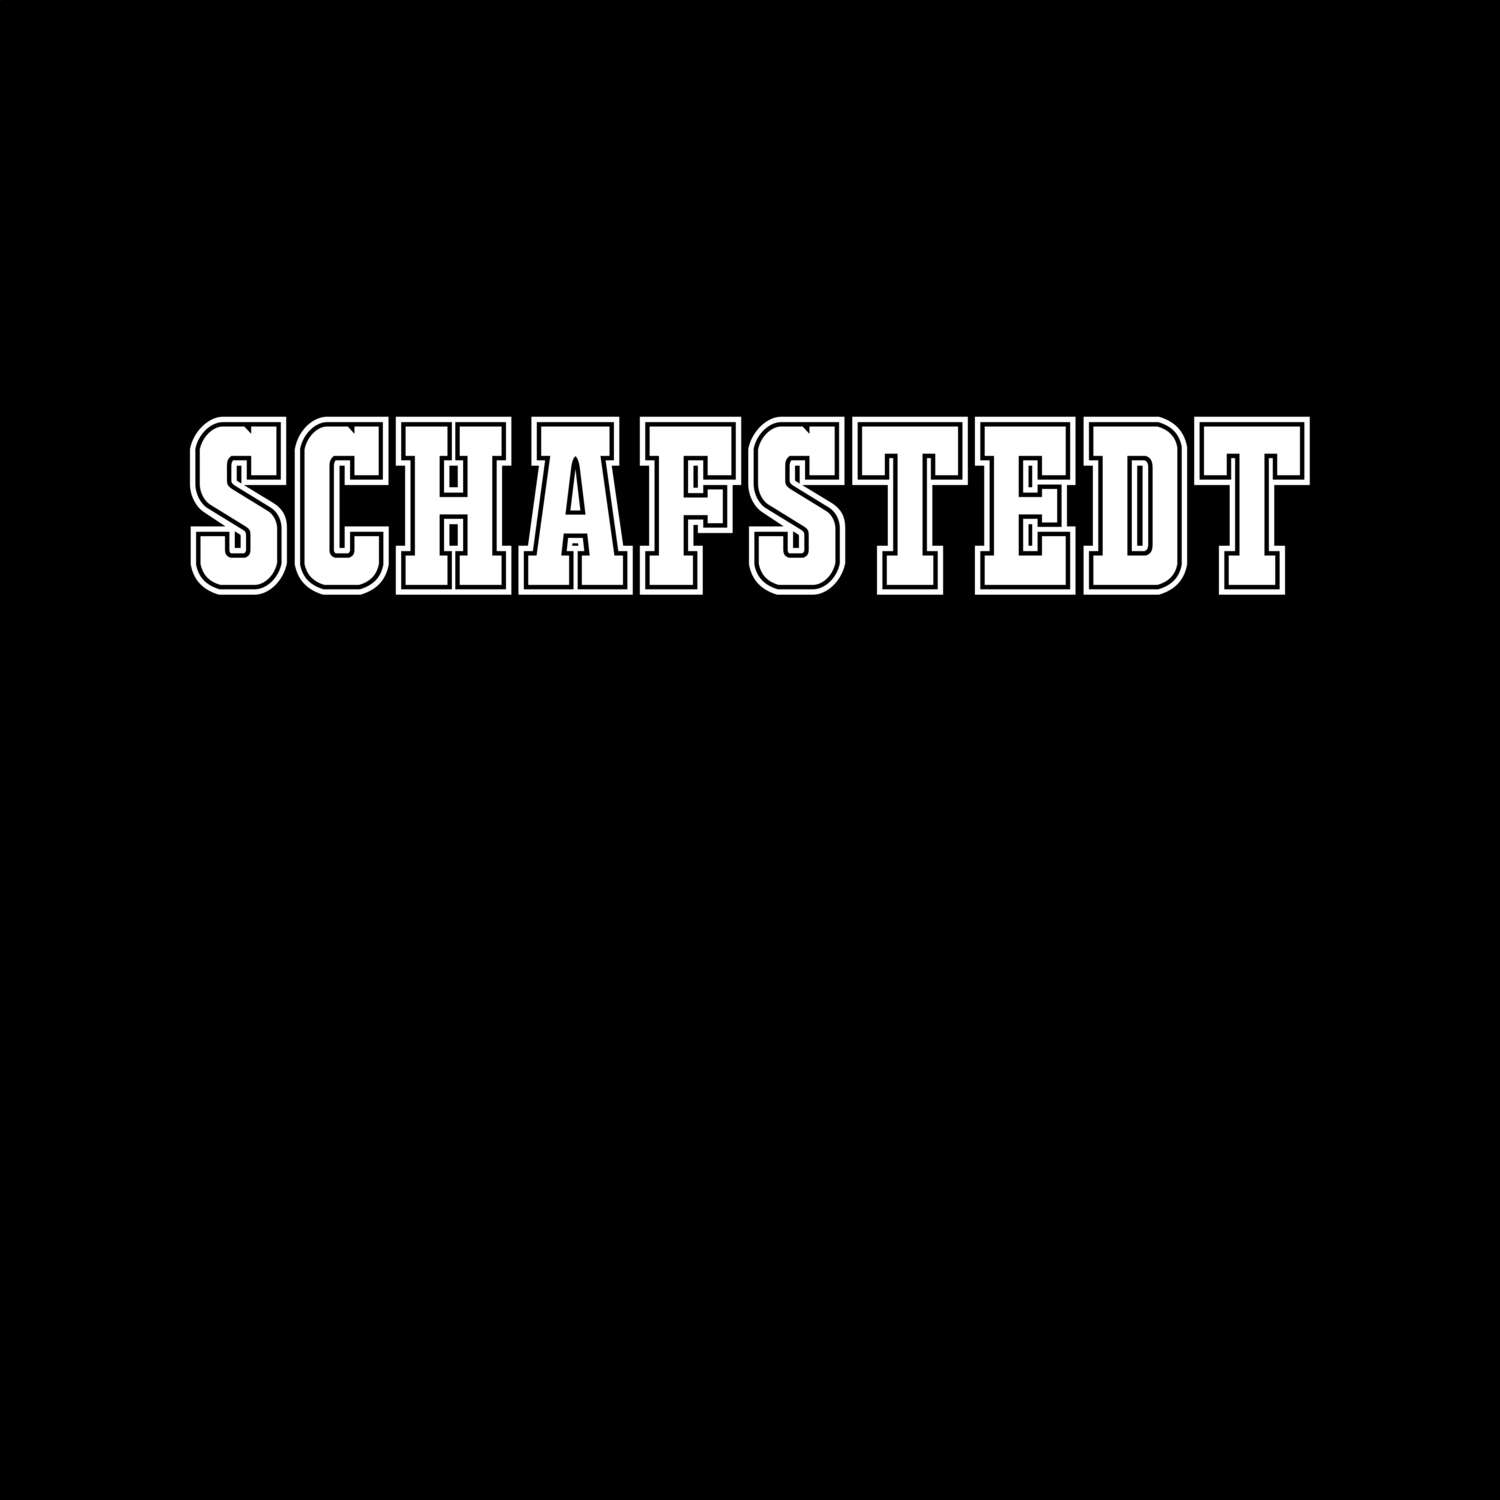 Schafstedt T-Shirt »Classic«